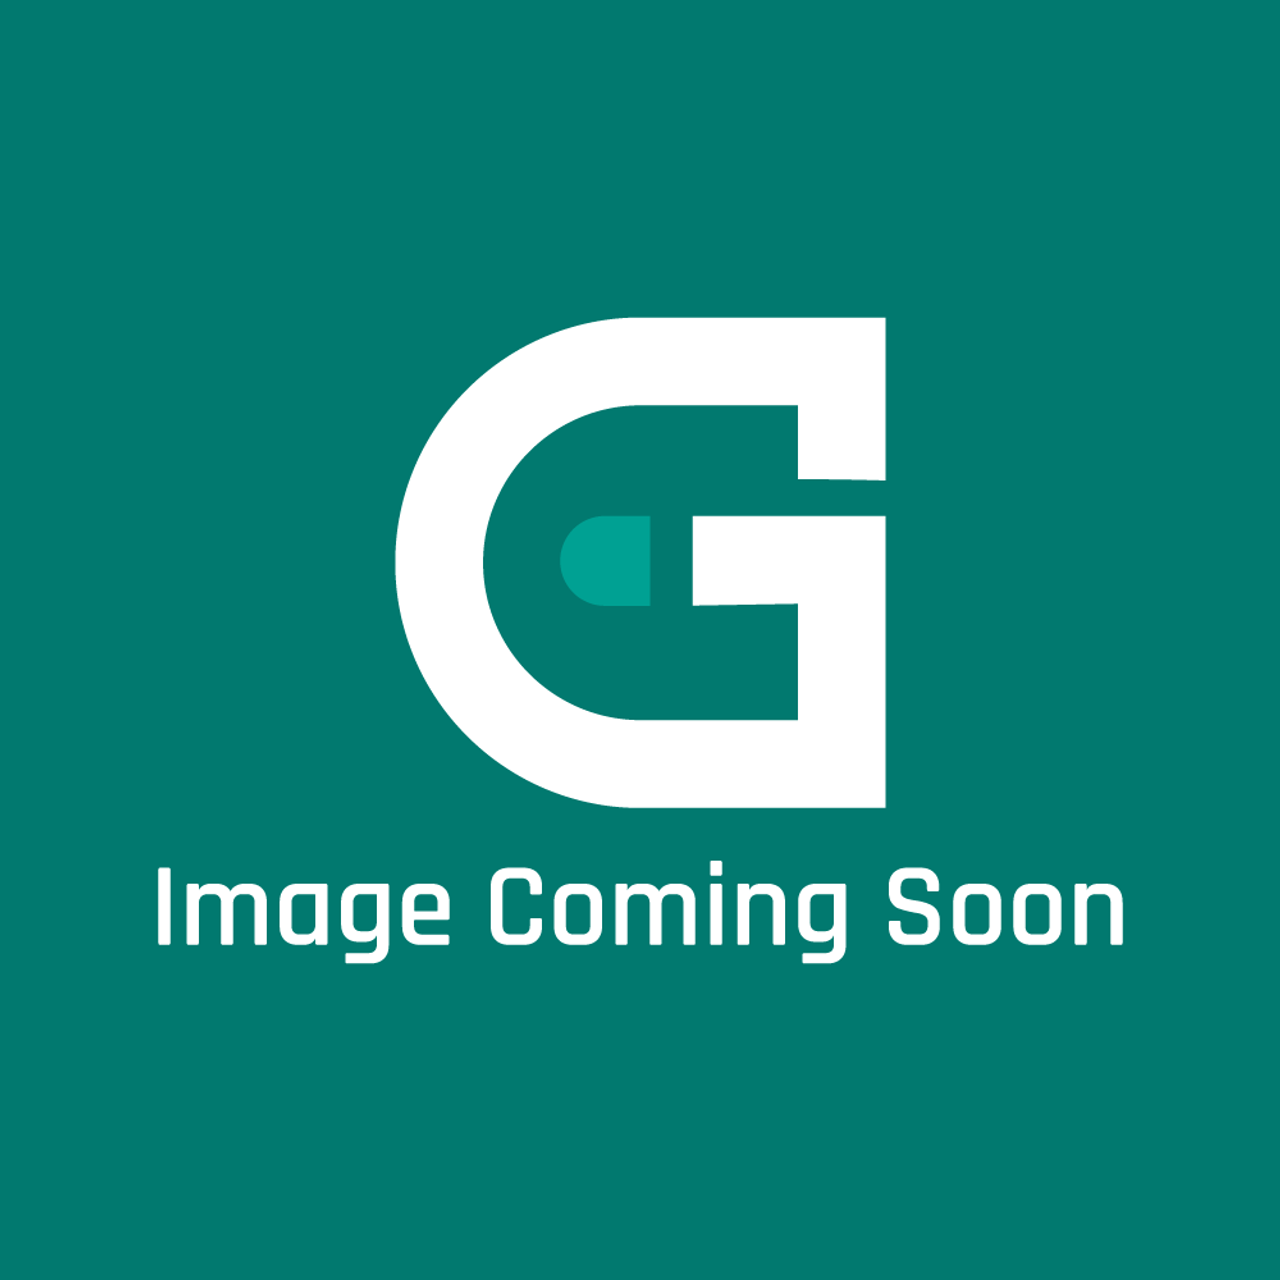 GE Appliances WE9M59 - Dryer Lower Door Gasket - Image Coming Soon!